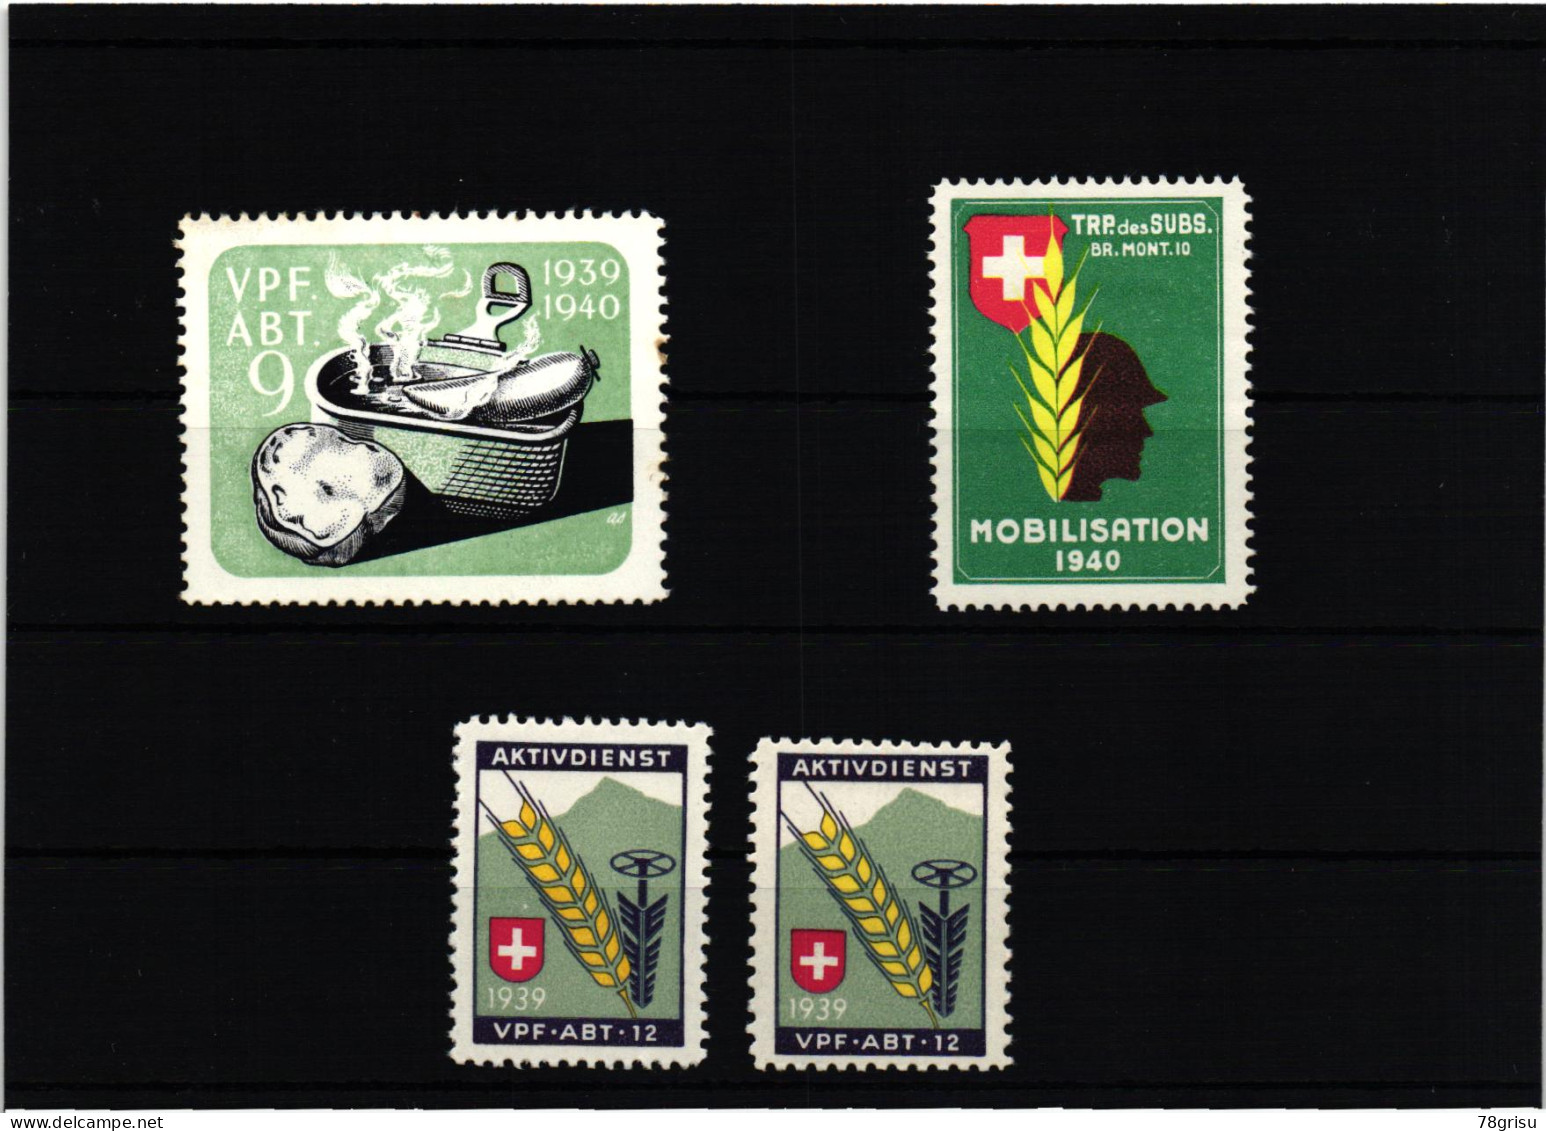 Schweiz Soldatenmarken, Vpf.Abt. Verpflegungs Abteilung 1939 1940 TRP. Des SUBS.  - Labels